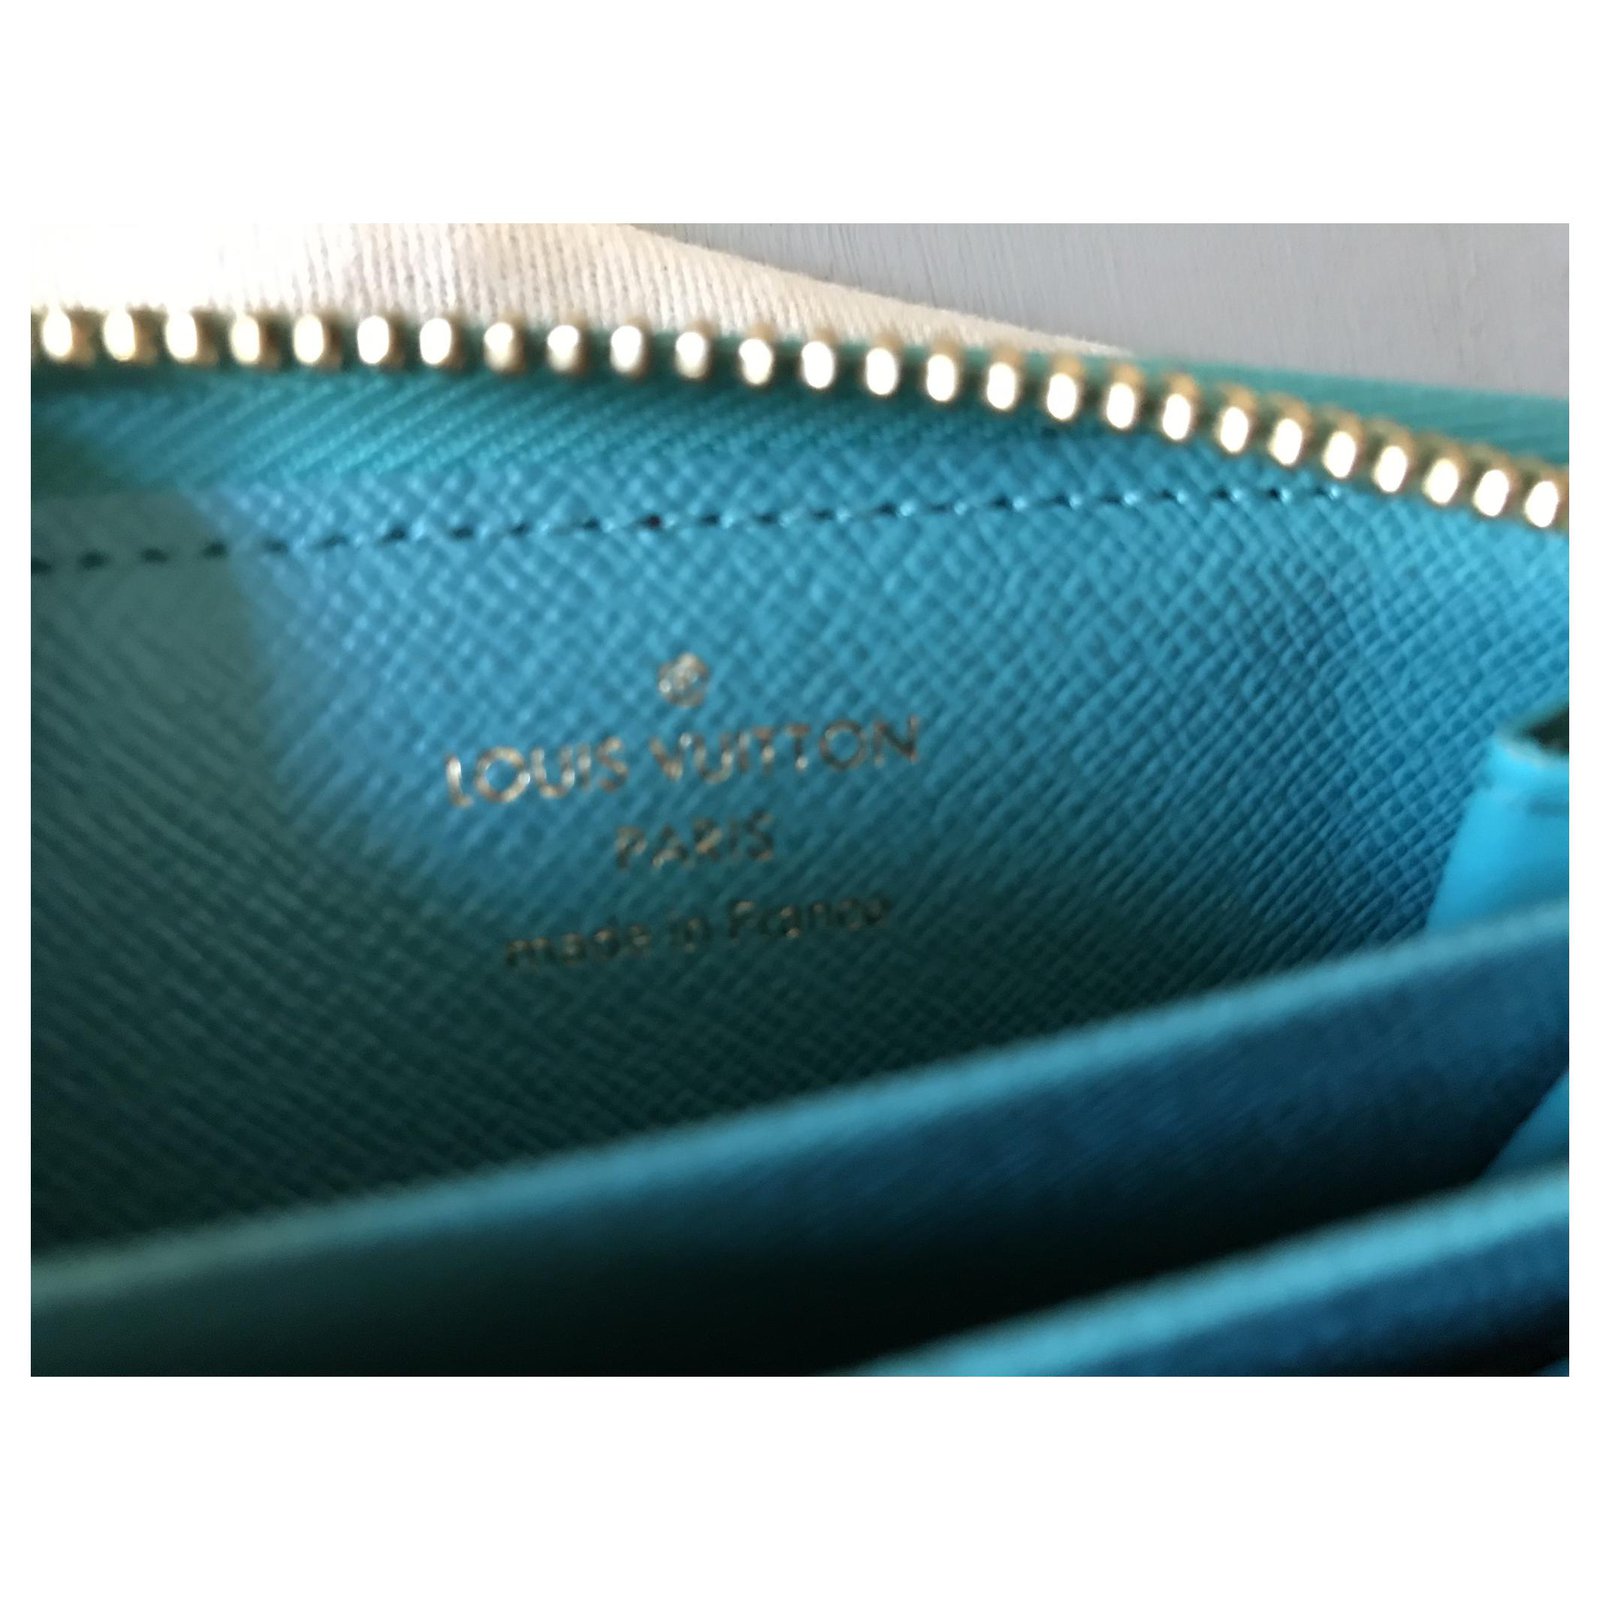 Louis Vuitton Zippy Multicartes Turquoise color Limite Edition summer 2015  ref.131678 - Joli Closet